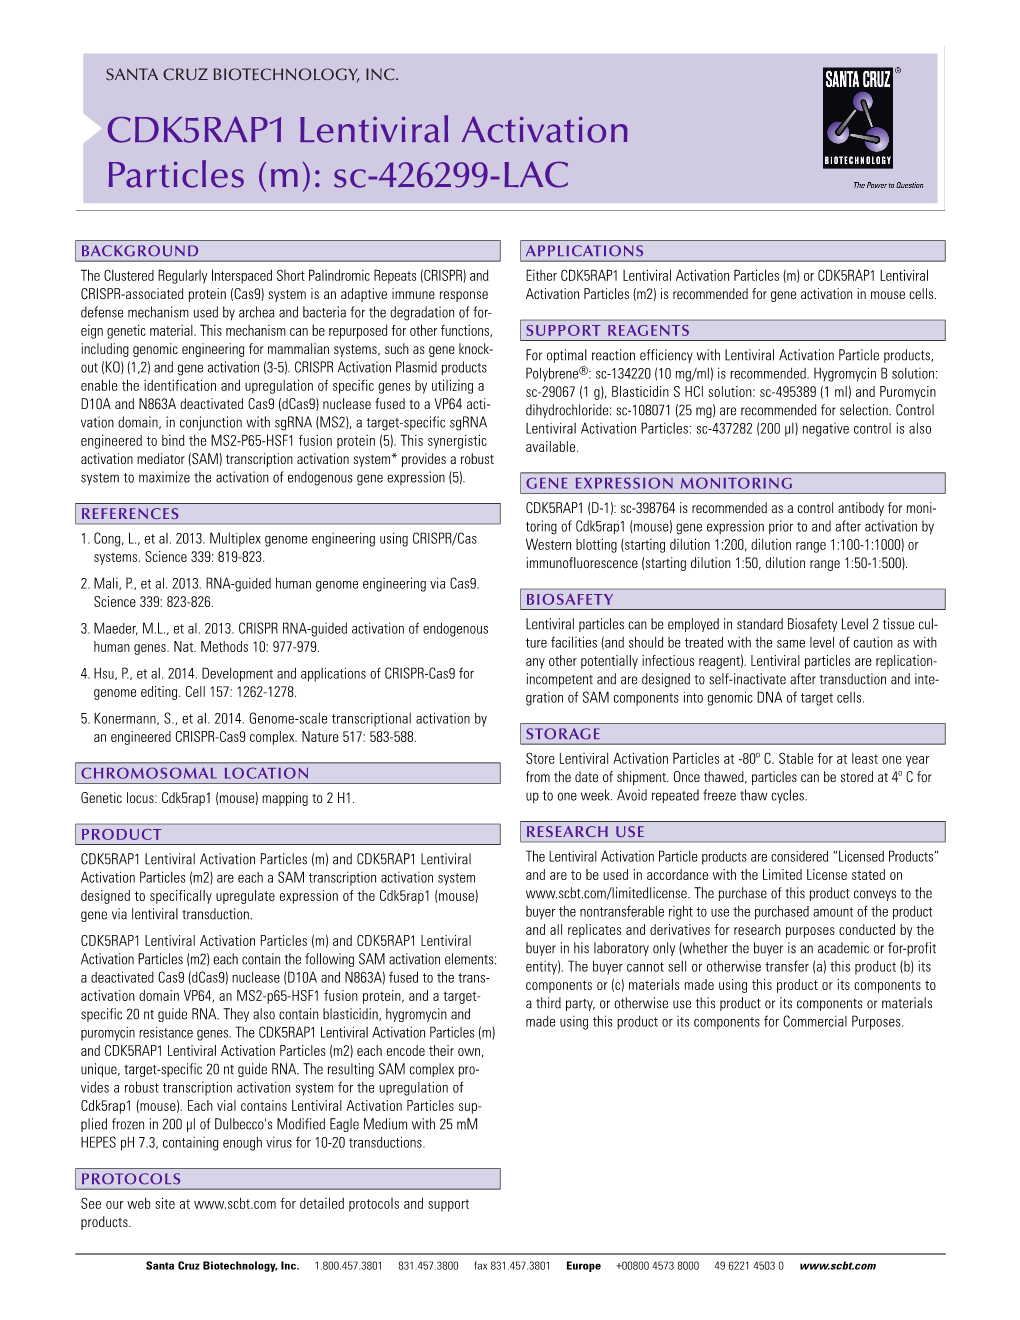 CDK5RAP1 Lentiviral Activation Particles (M): Sc-426299-LAC